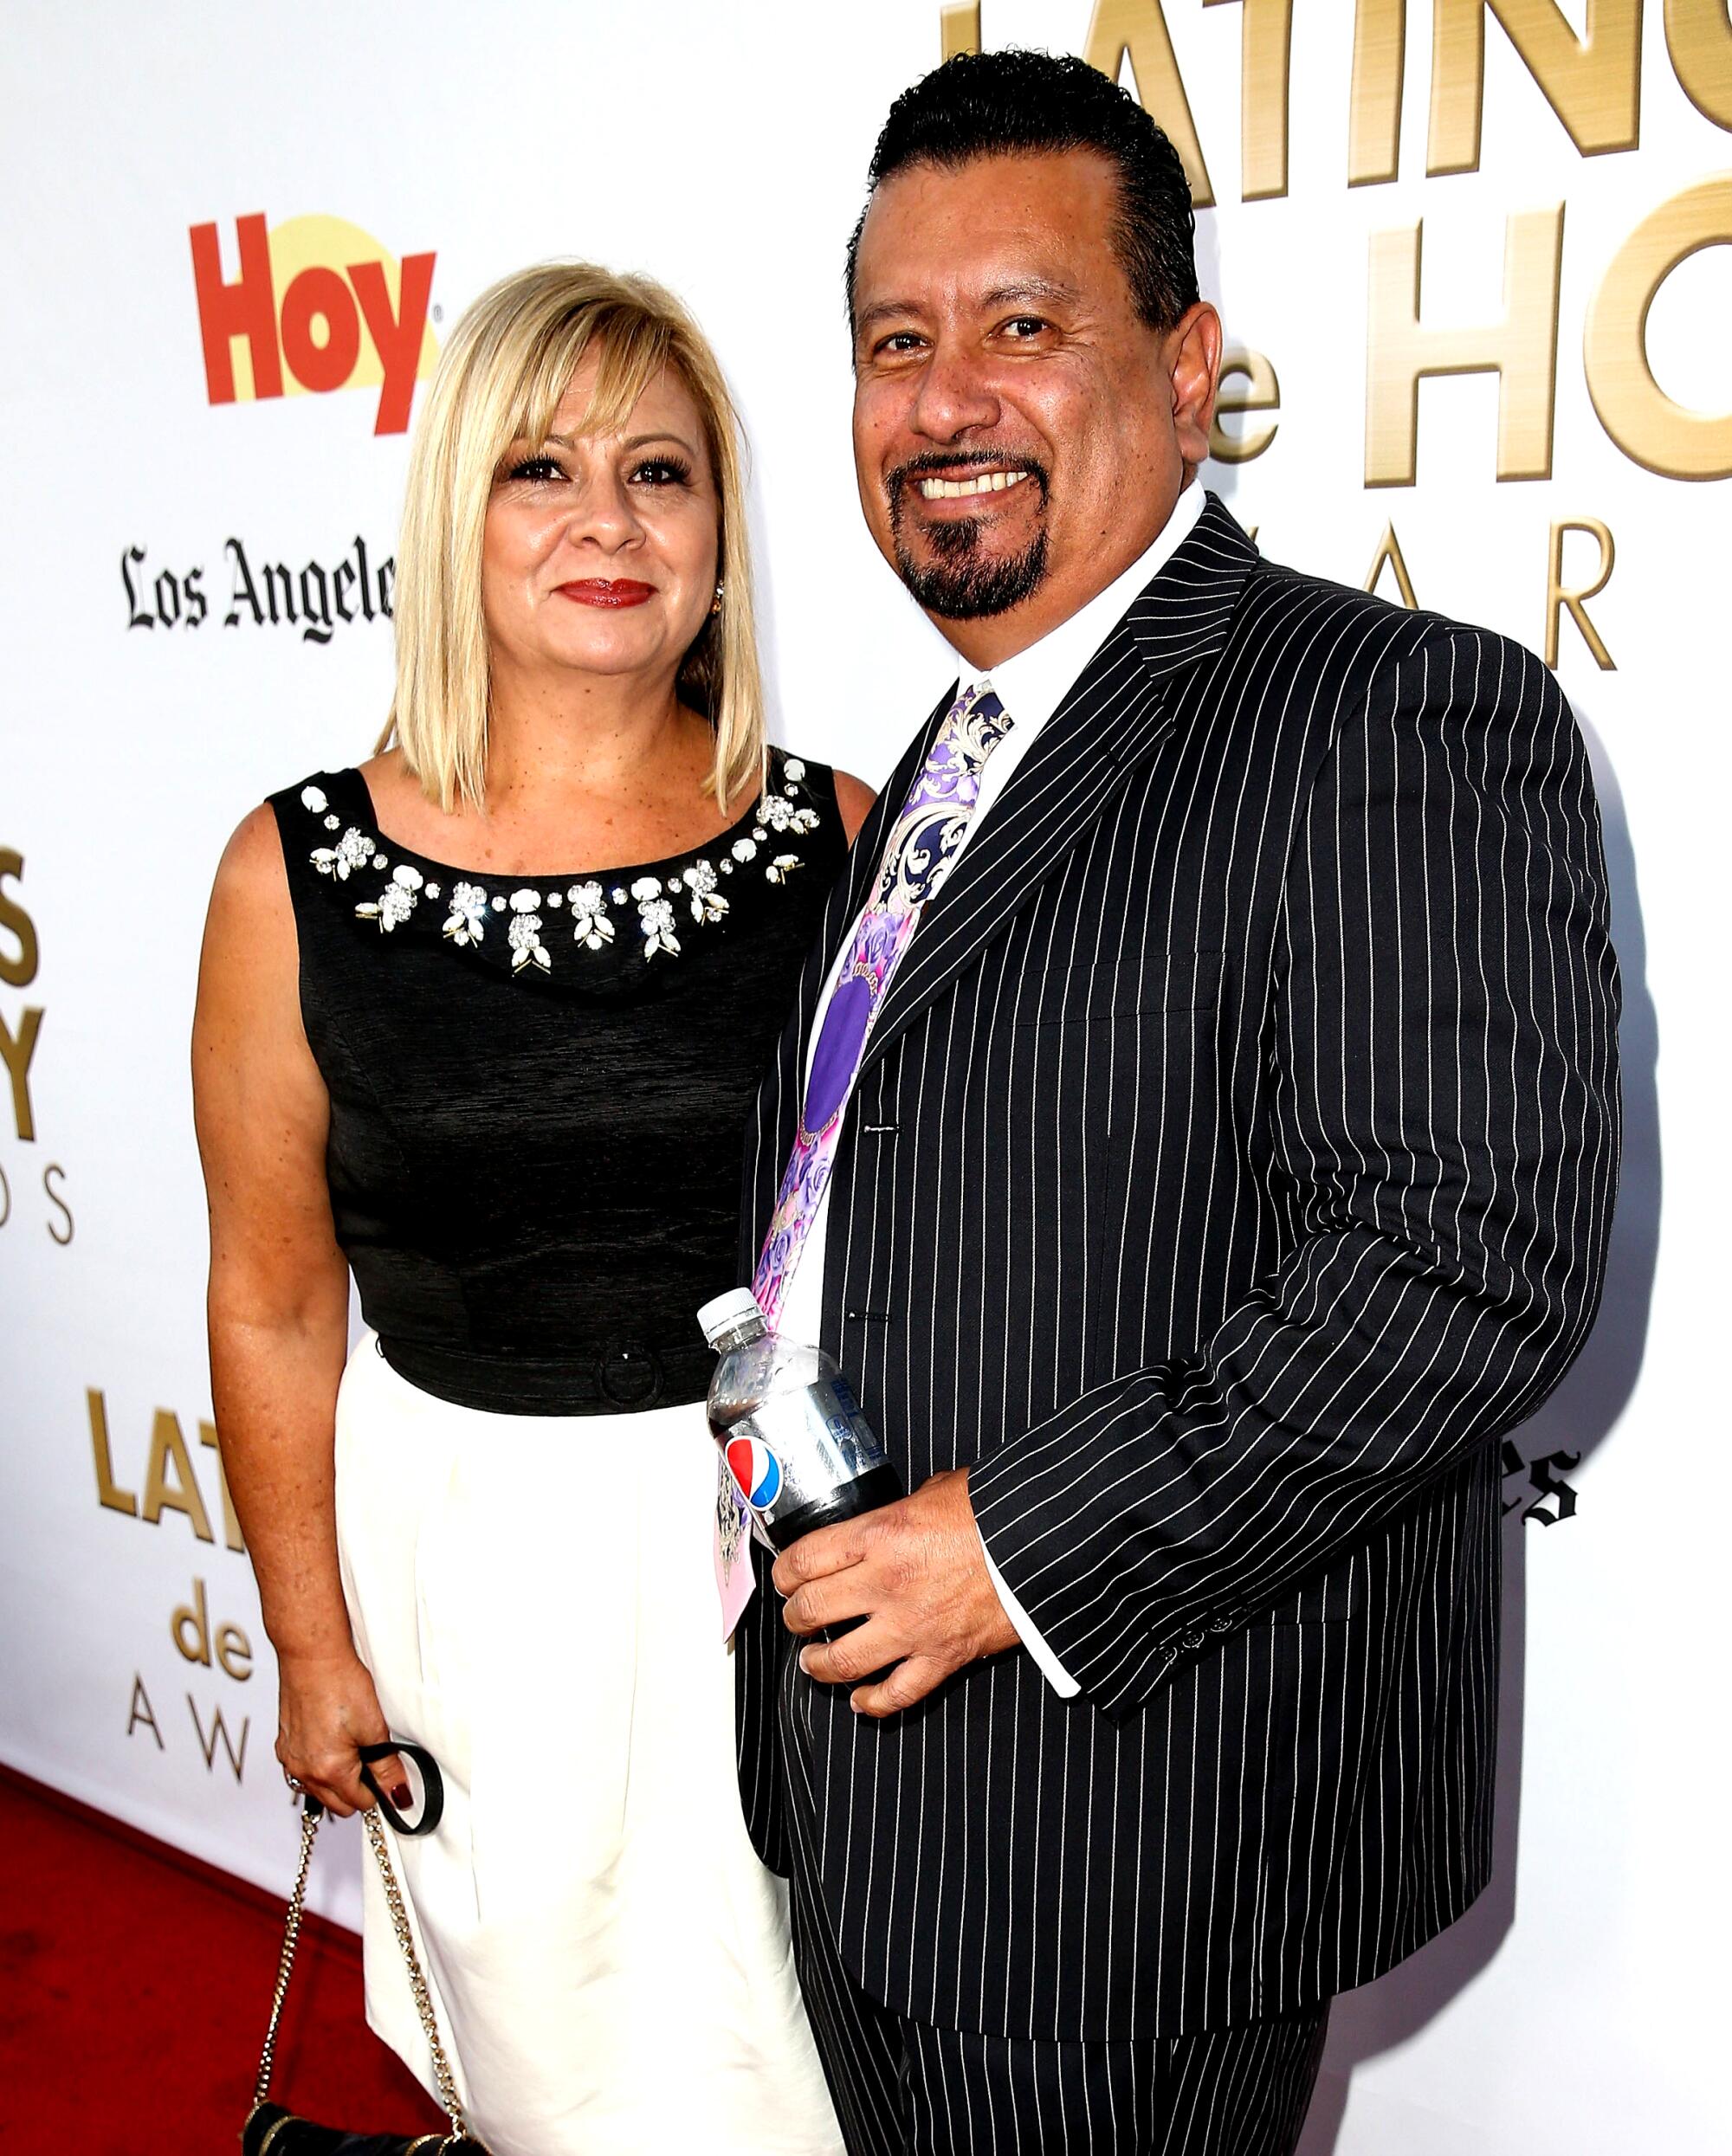 Richard Montañez and his wife.